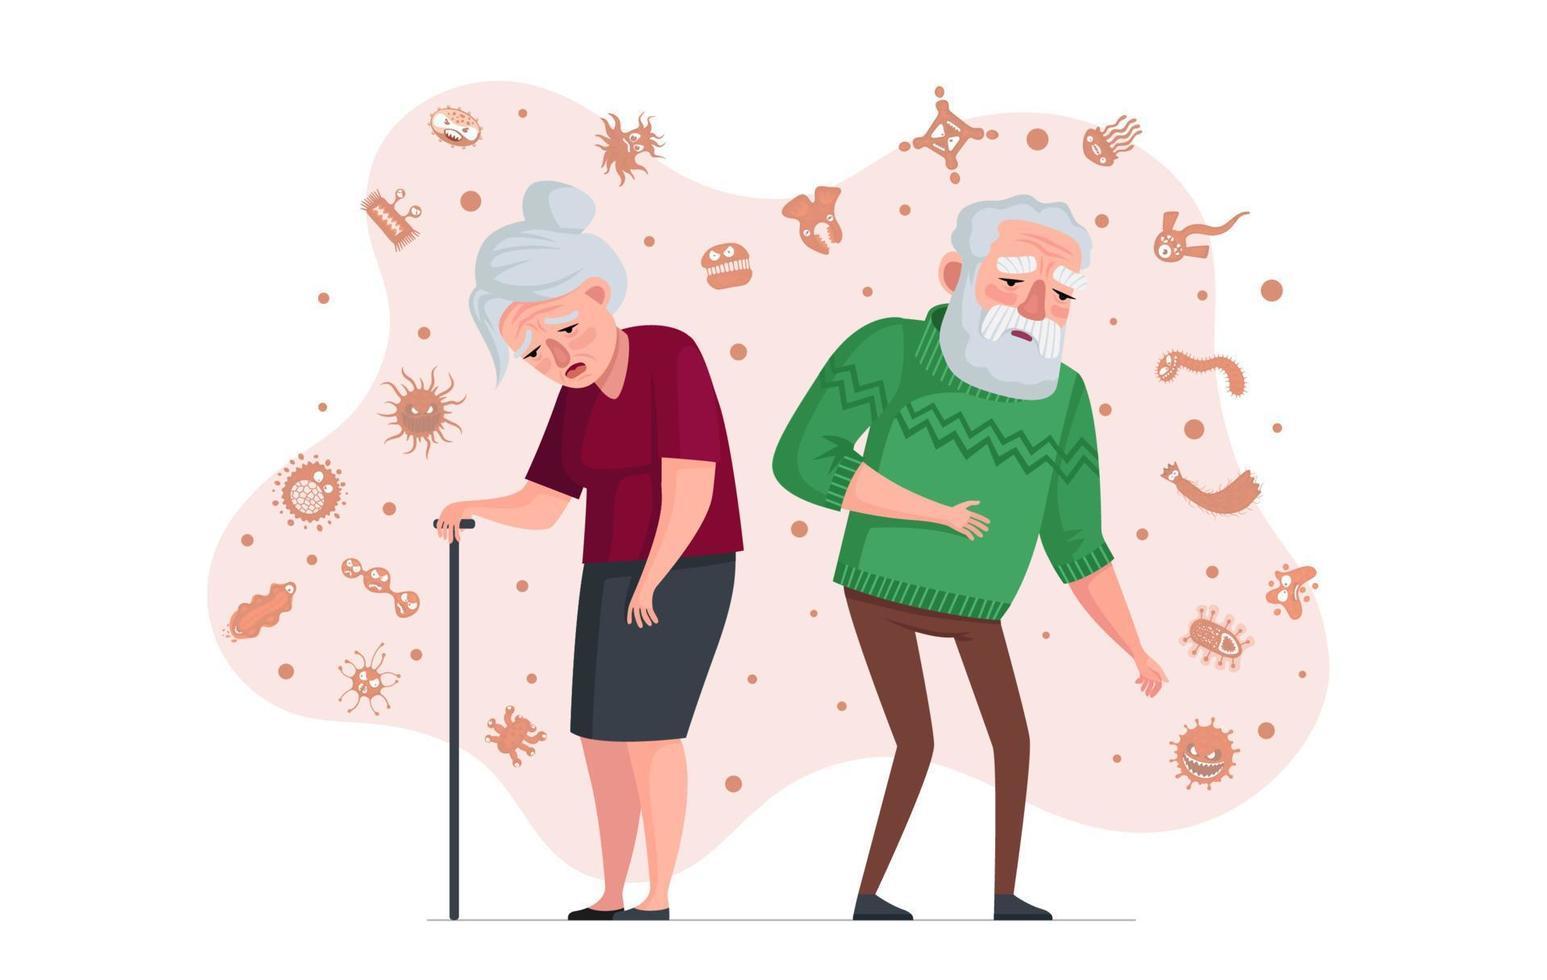 äldre människor svagt immunsystem koncept. ohälsosam gammal man och sjuk äldre kvinna omgiven av virus och bakterier. pensionärer riskerar att bli sjuka under pandemiinfektion. åldersperson utan immunitet. eps vektor